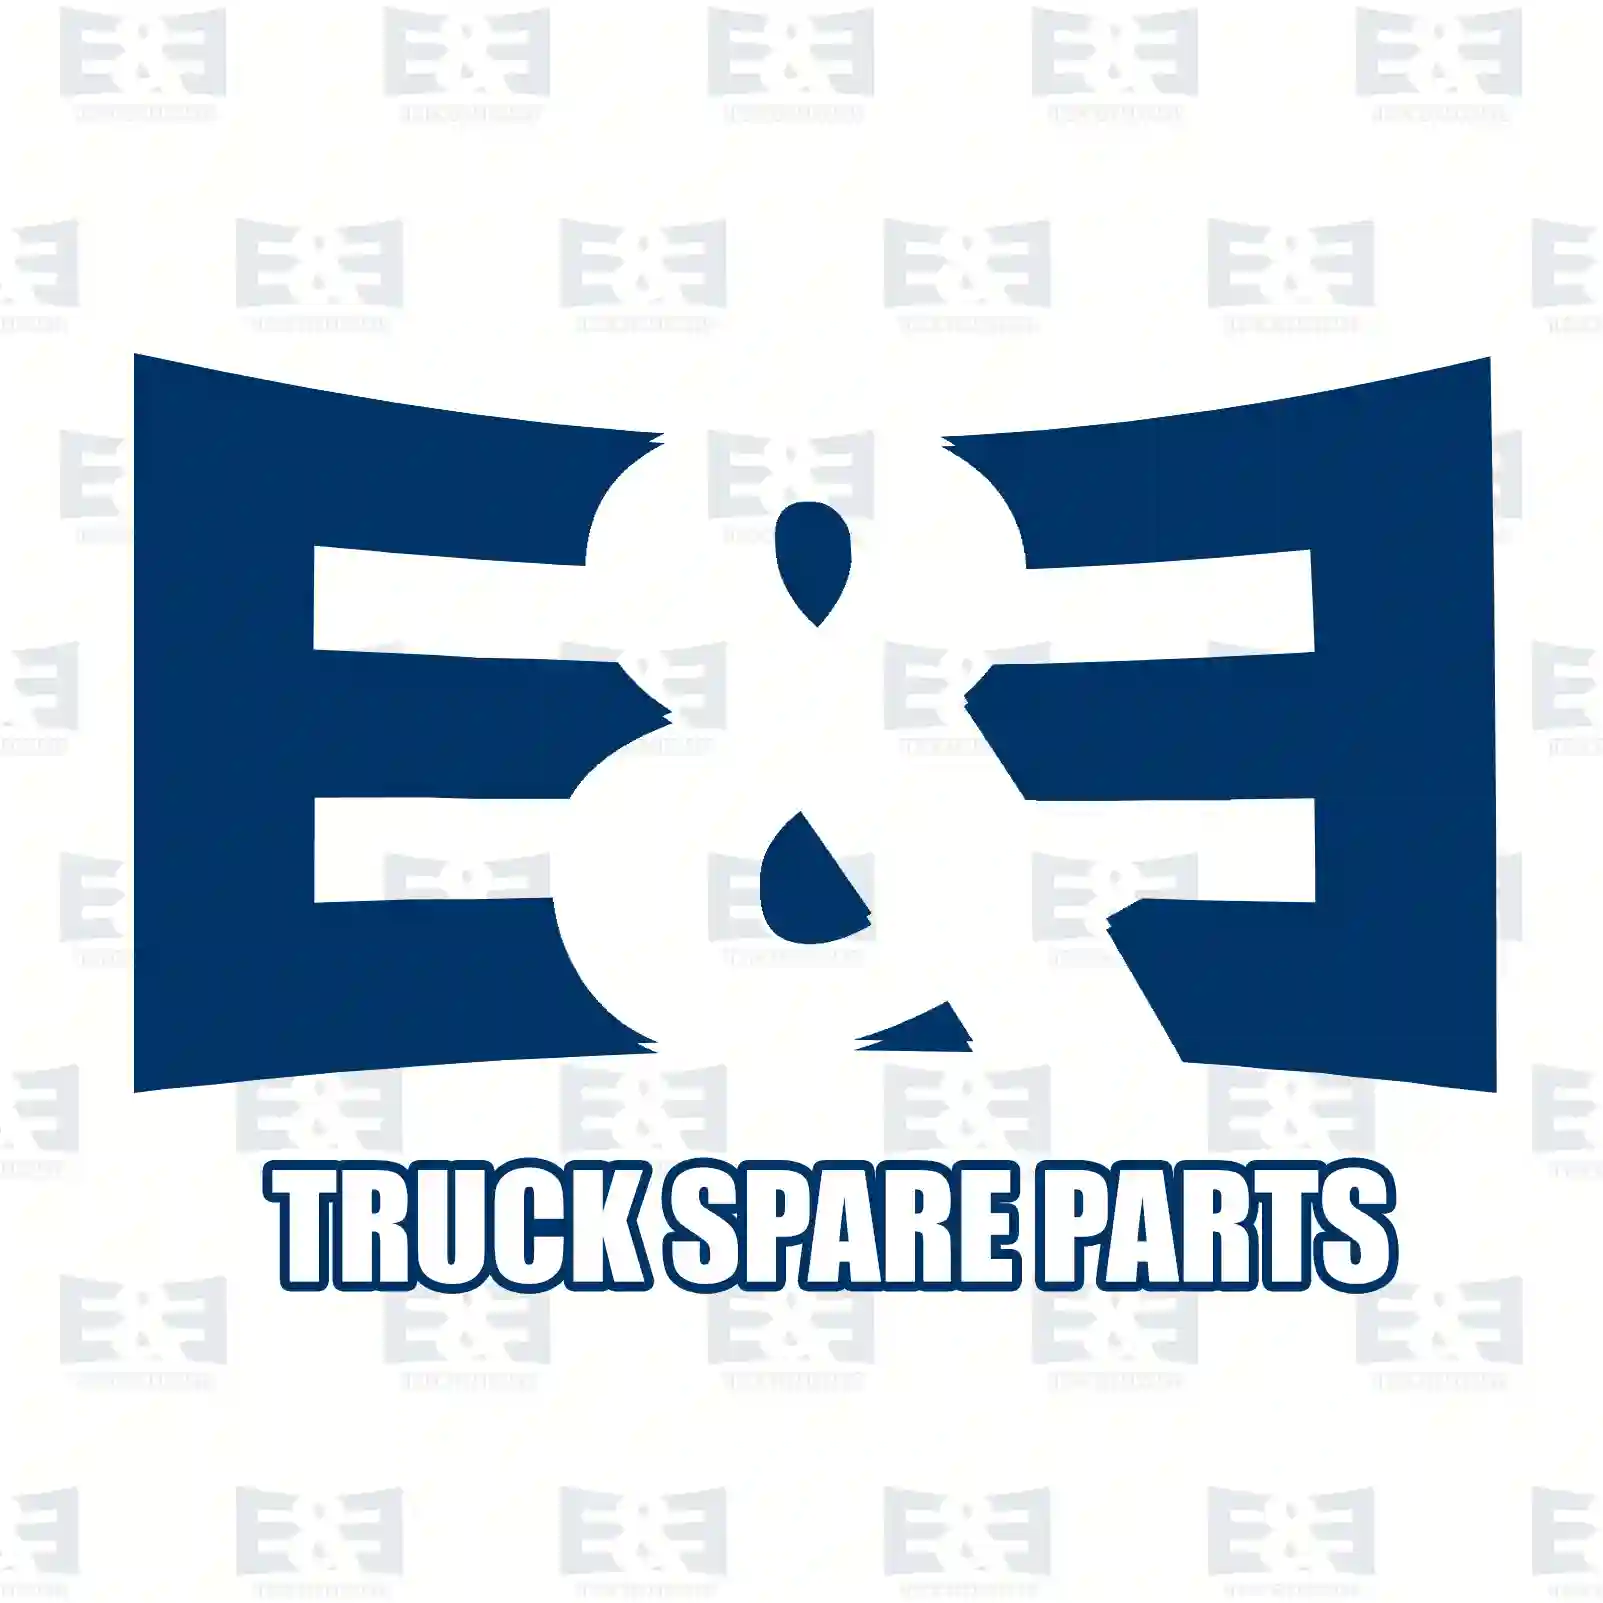 Compressor, 2E2296789, 51541006007, 51541007284, 51541009007 ||  2E2296789 E&E Truck Spare Parts | Truck Spare Parts, Auotomotive Spare Parts Compressor, 2E2296789, 51541006007, 51541007284, 51541009007 ||  2E2296789 E&E Truck Spare Parts | Truck Spare Parts, Auotomotive Spare Parts